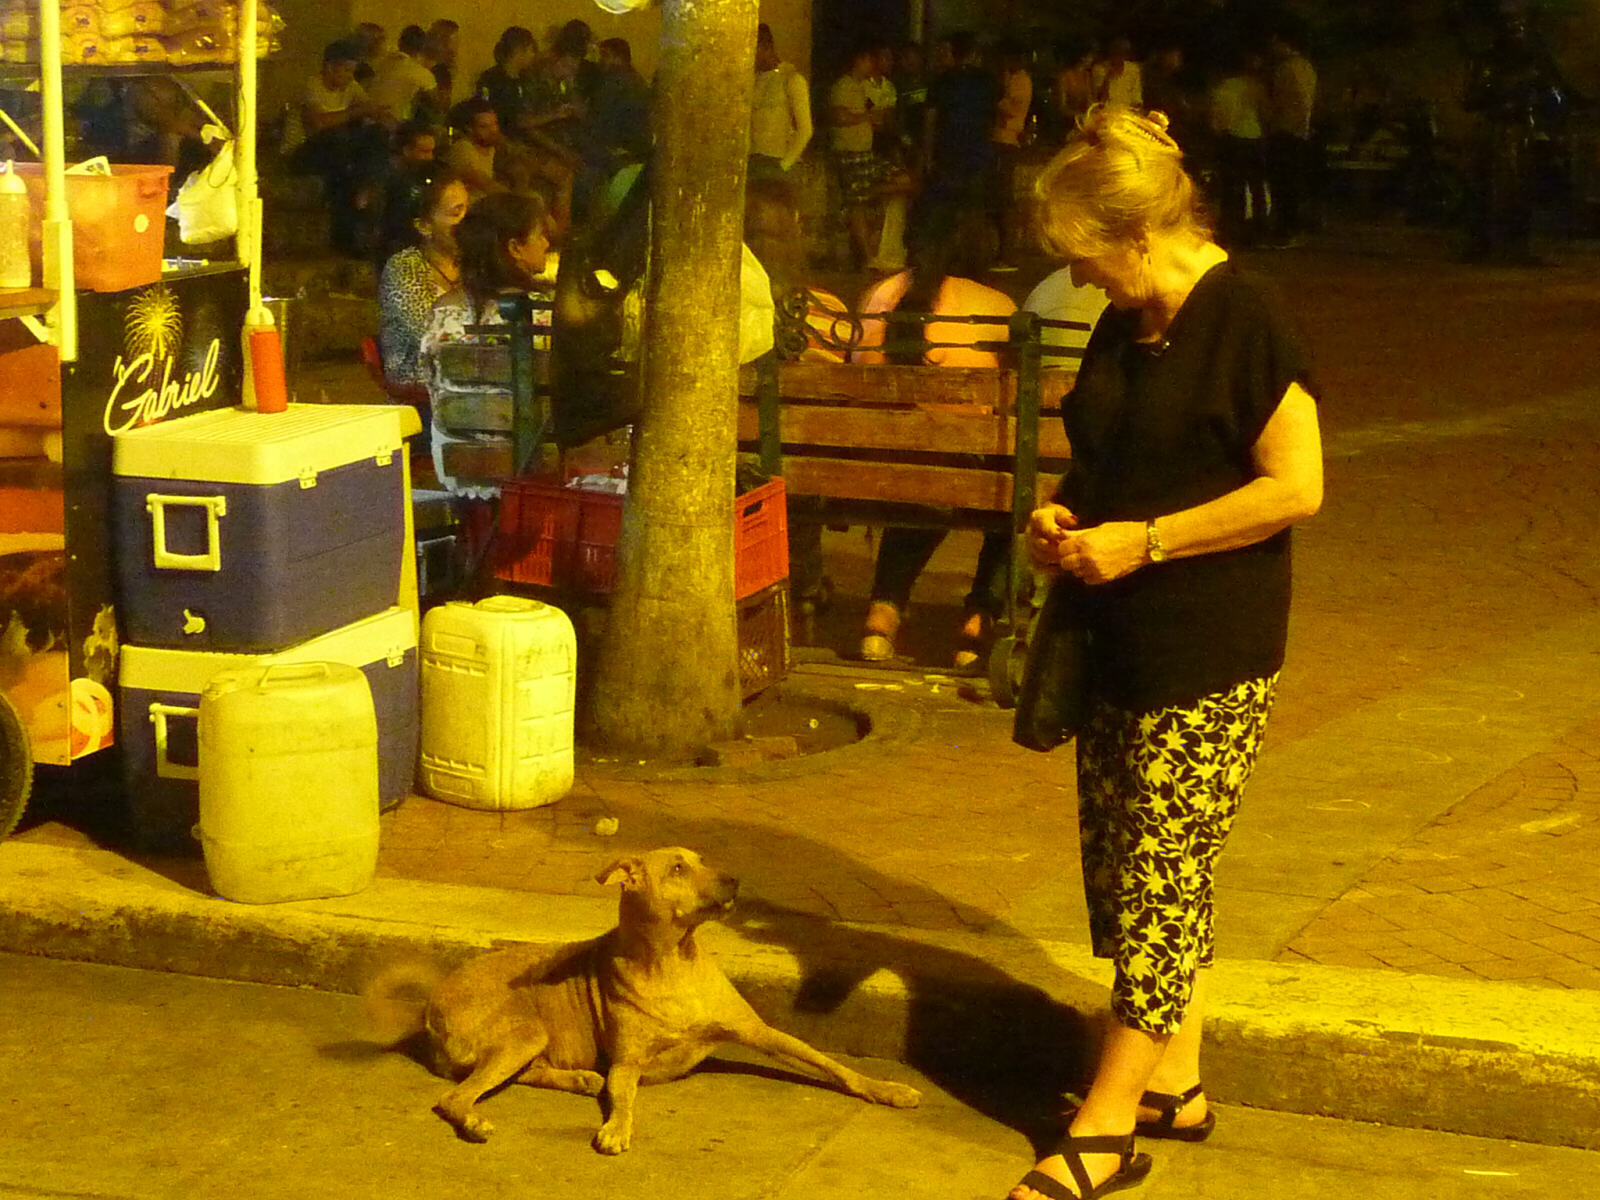 An earnest conversation in Plaza de la Trinidad, Cartagena